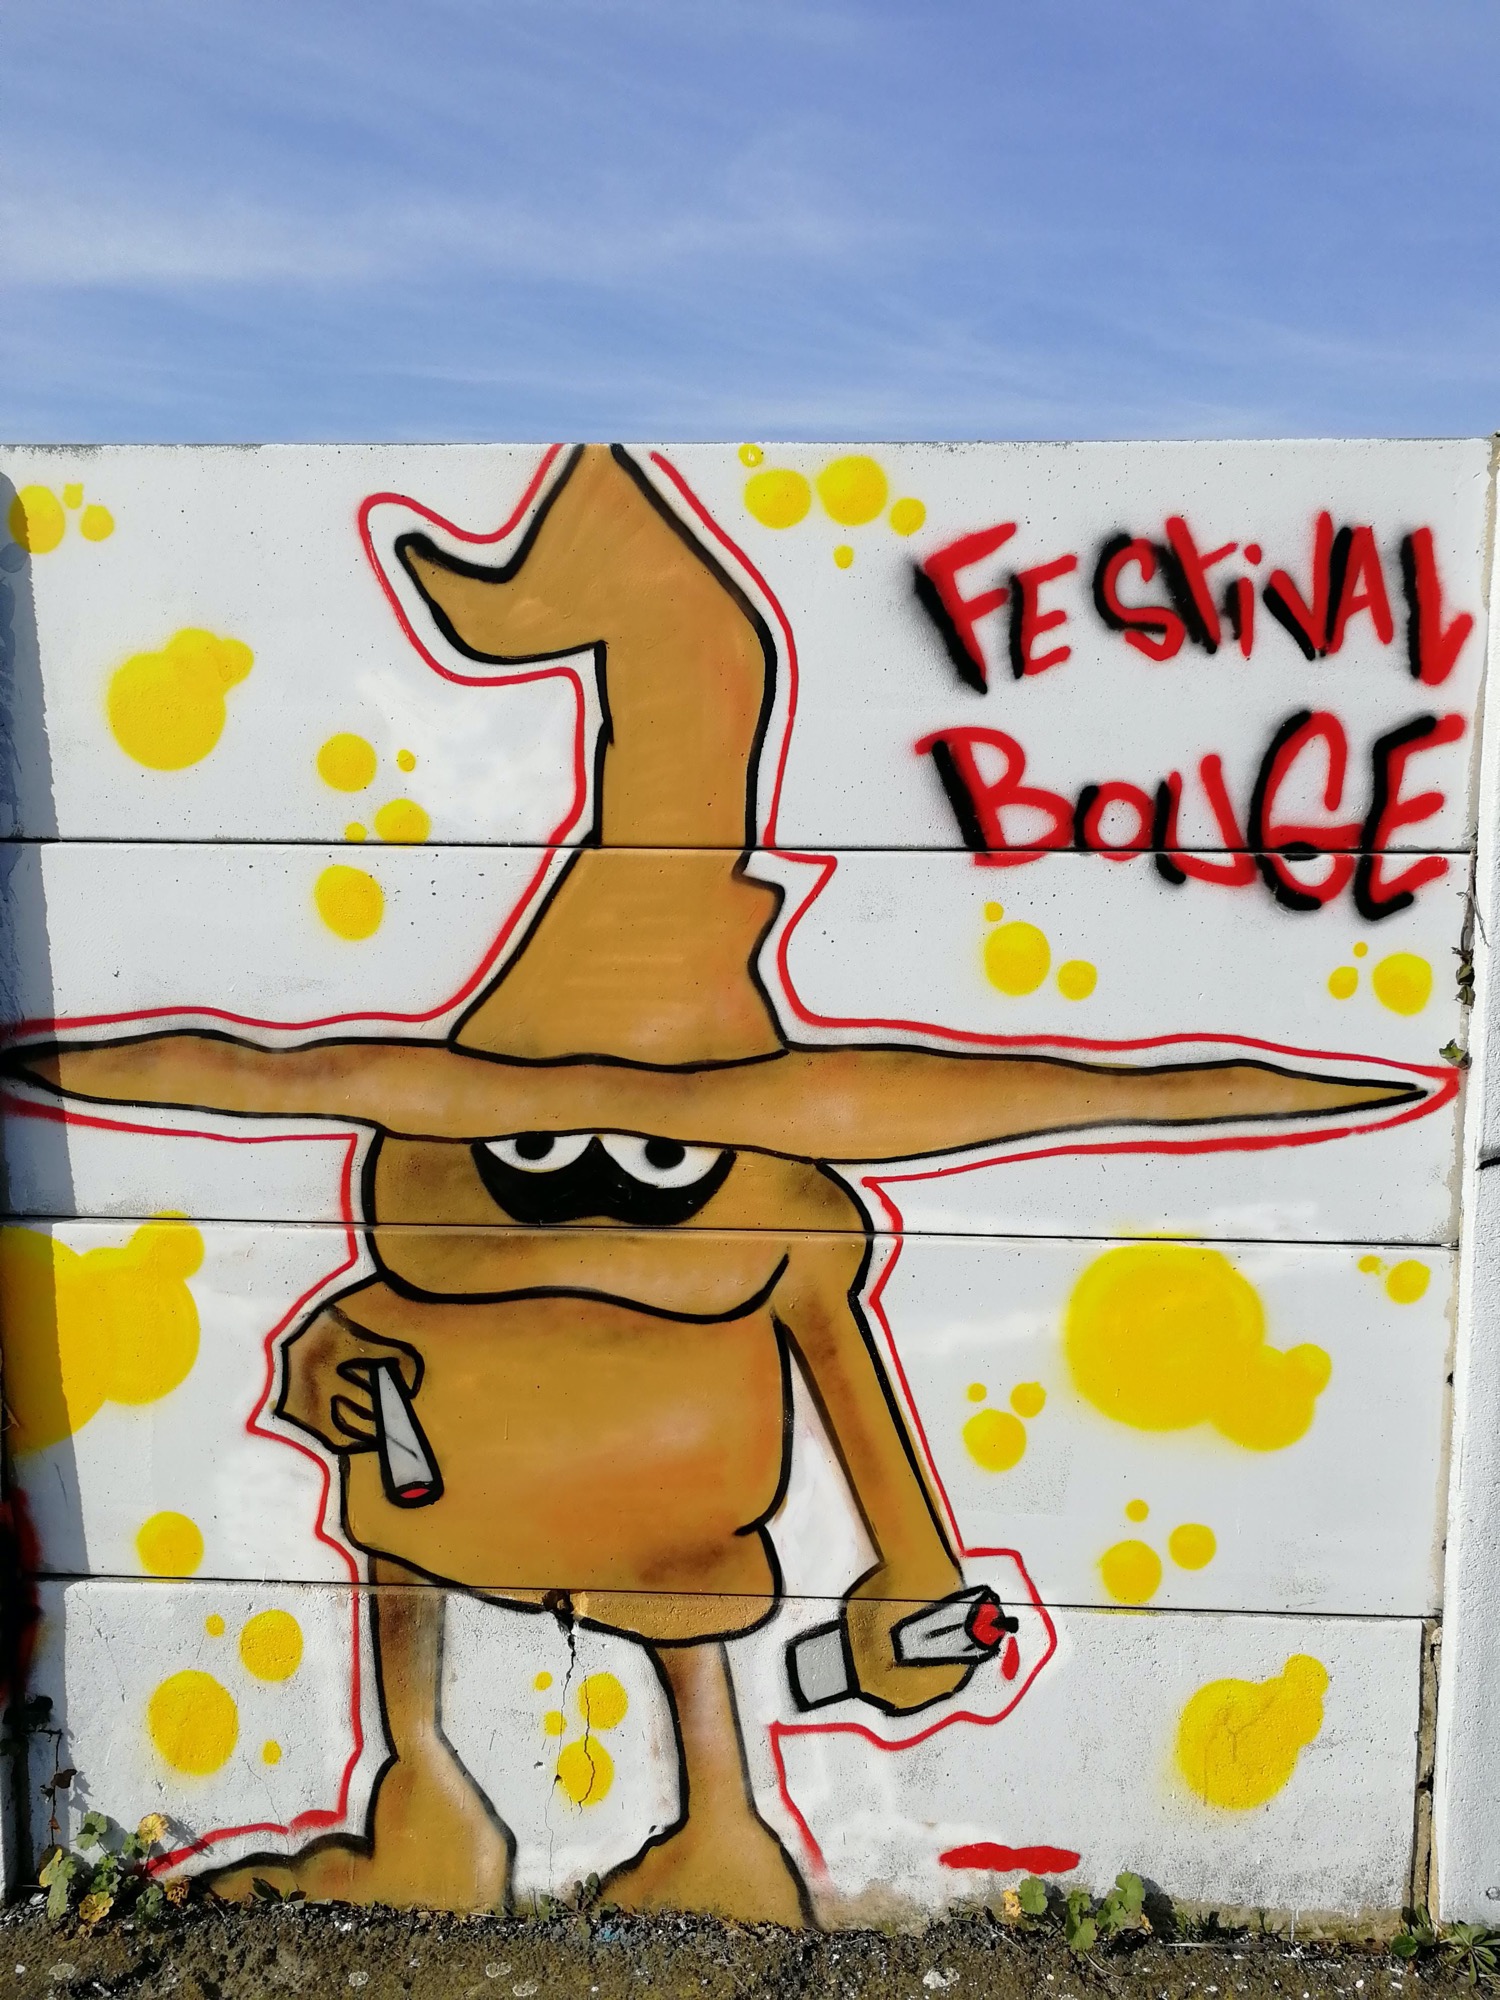 Graffiti 913 Festival bouge capturé par Rabot à Saint-Nazaire France